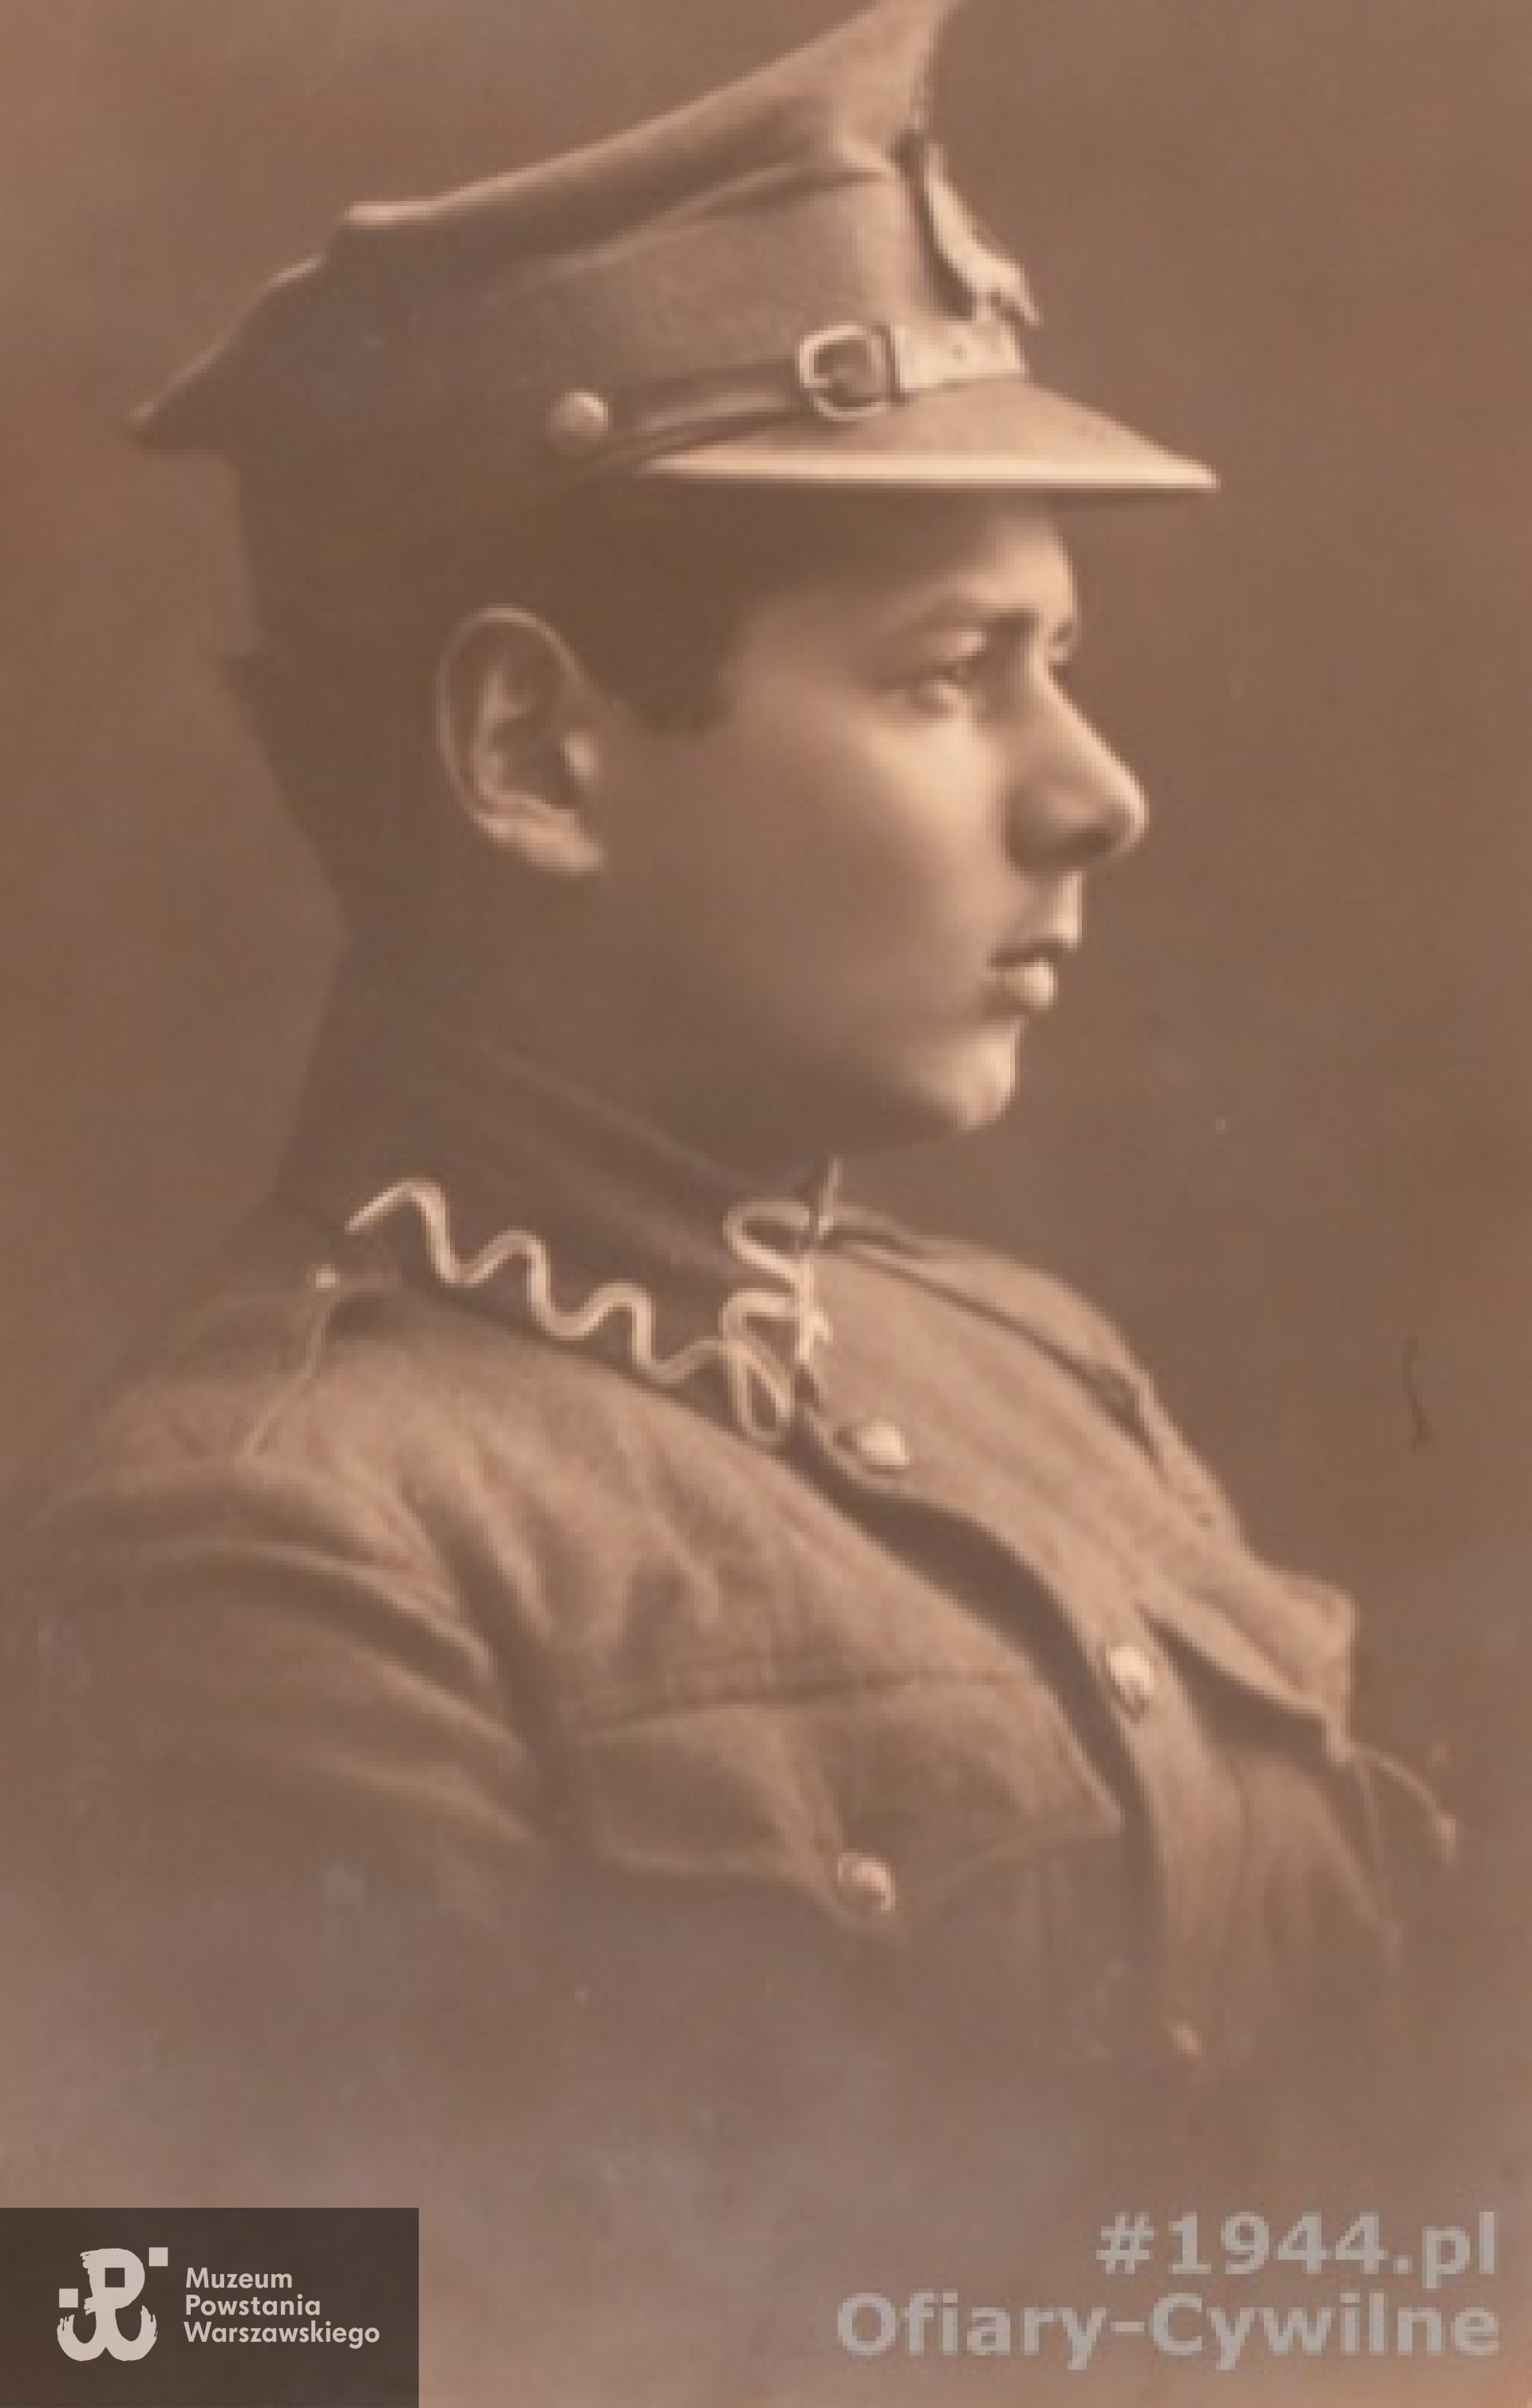 Witold Szwentner (1900-1944), zdjęcie w mundurze ochotnika z wojny polsko-bolszewickiej udostępnione przez panią Małgorzatę Deckert